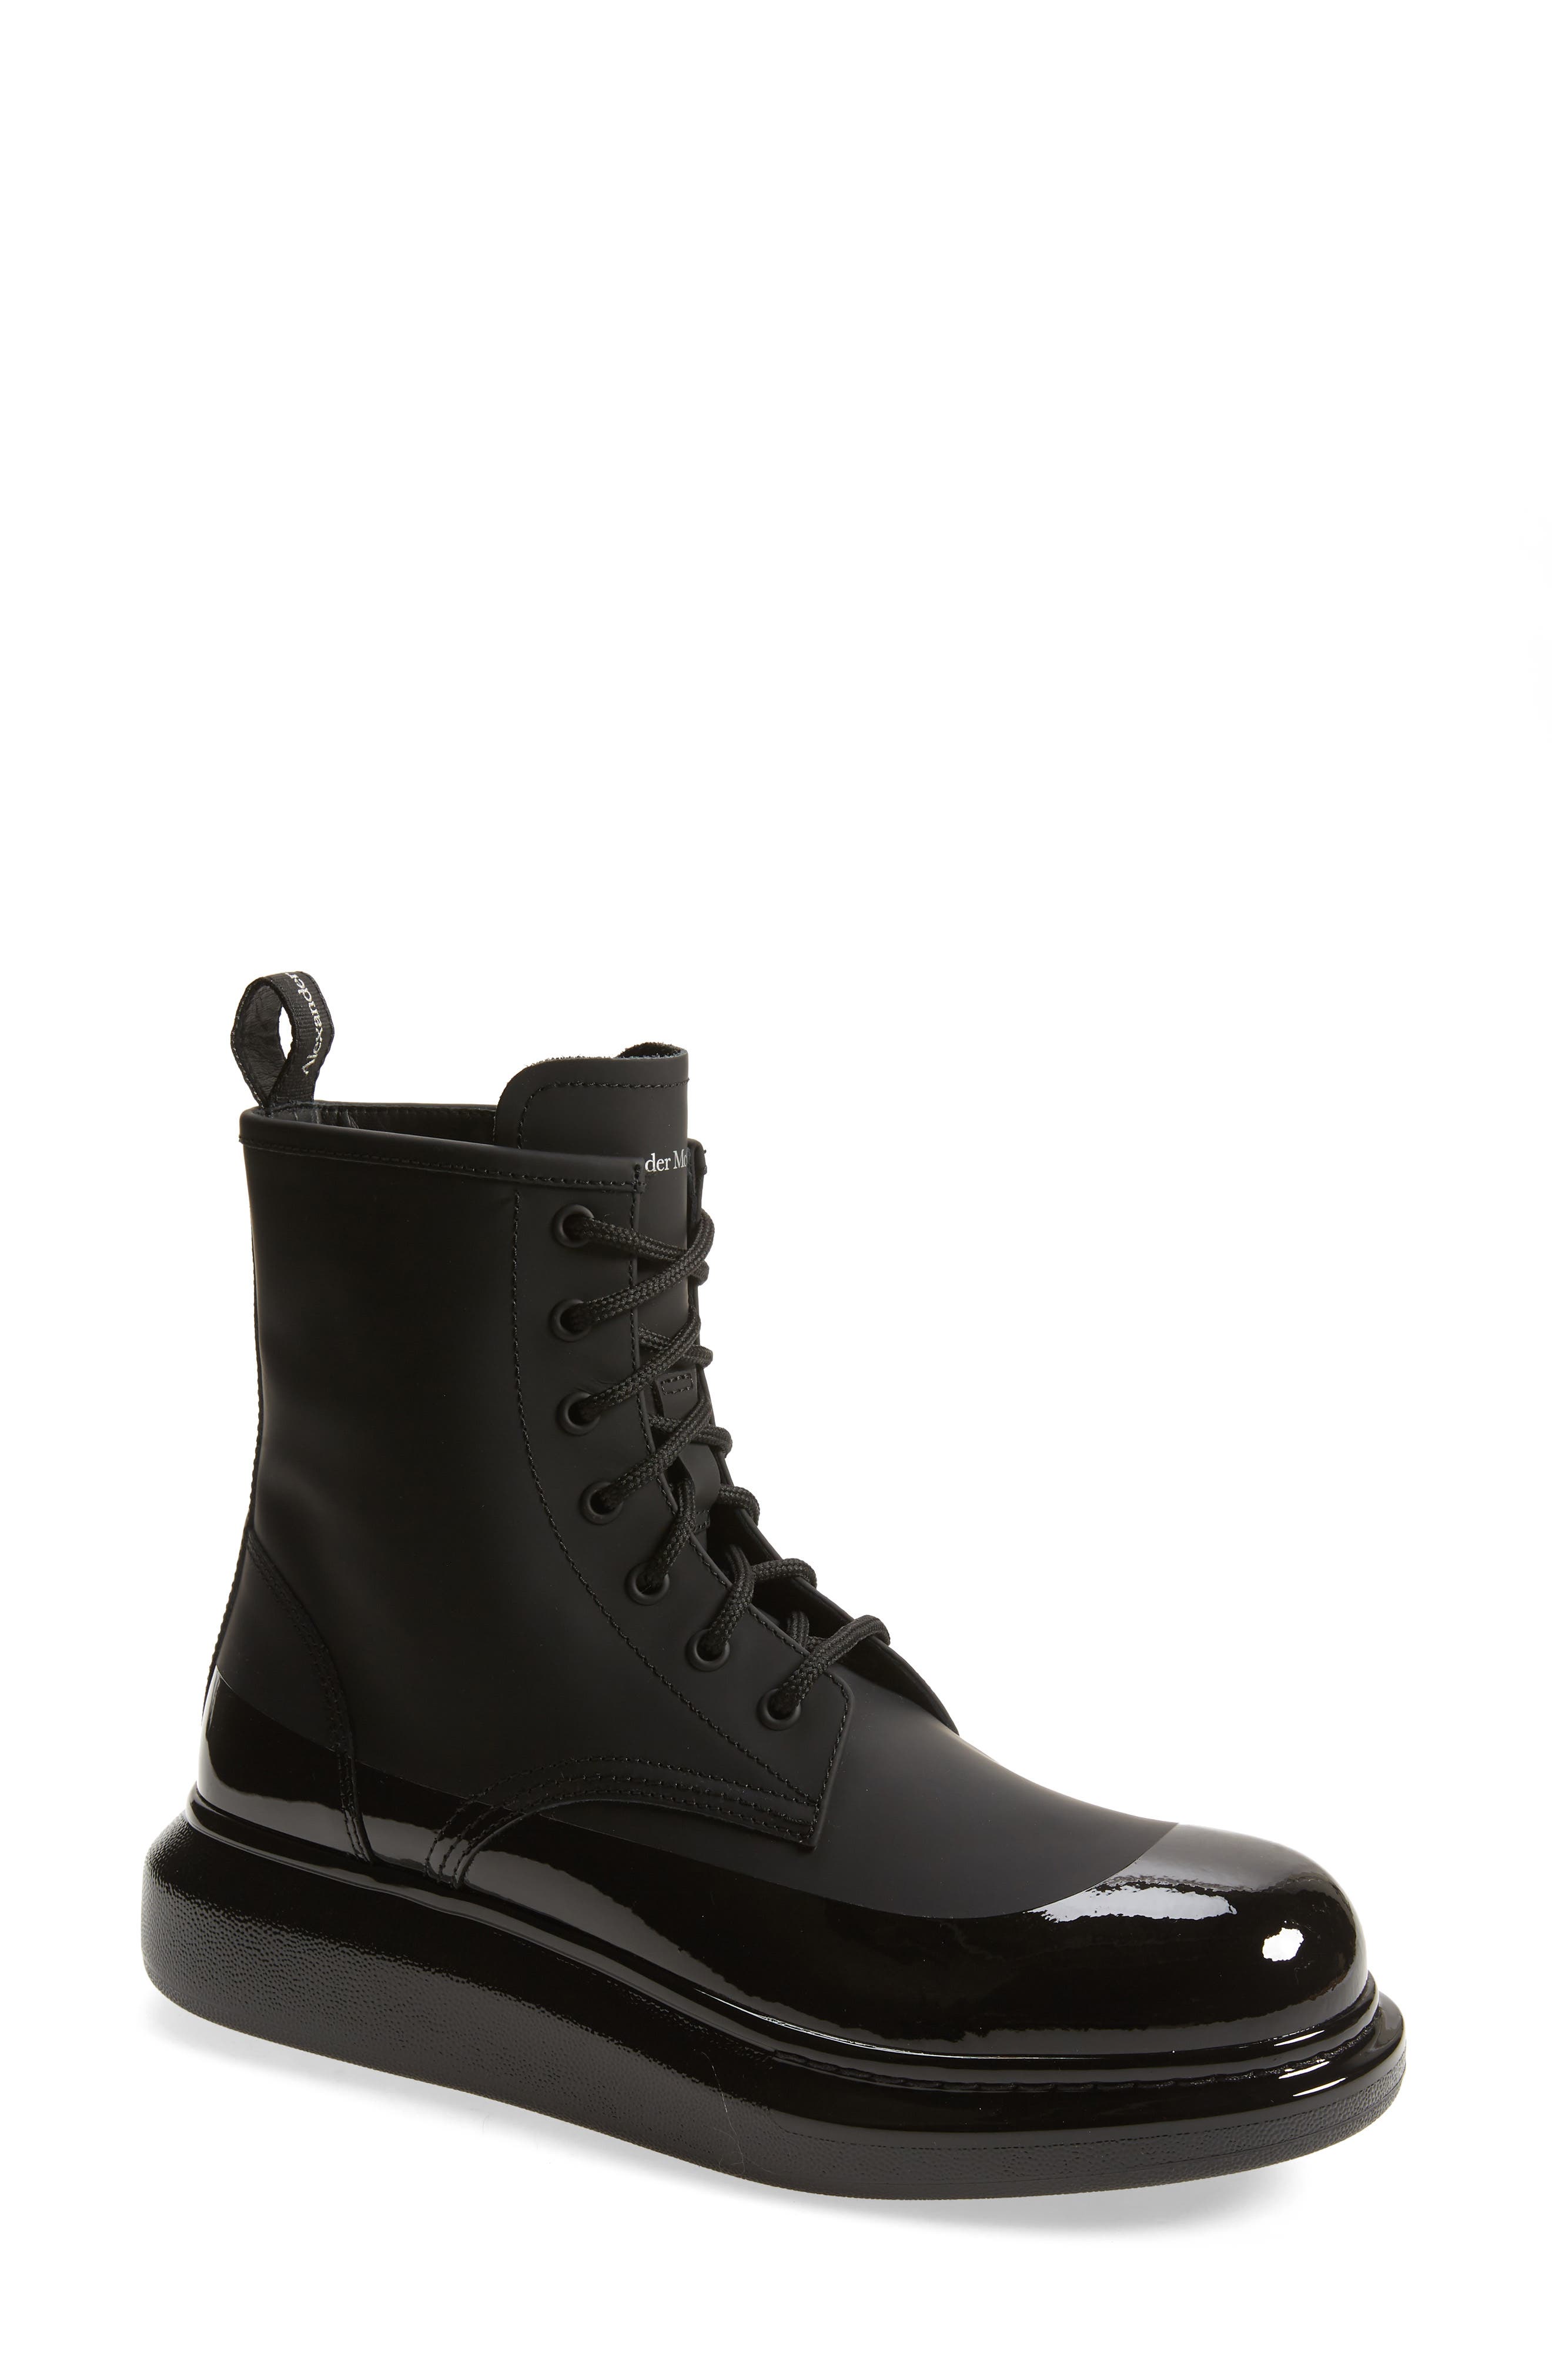 mcqueen boots for men